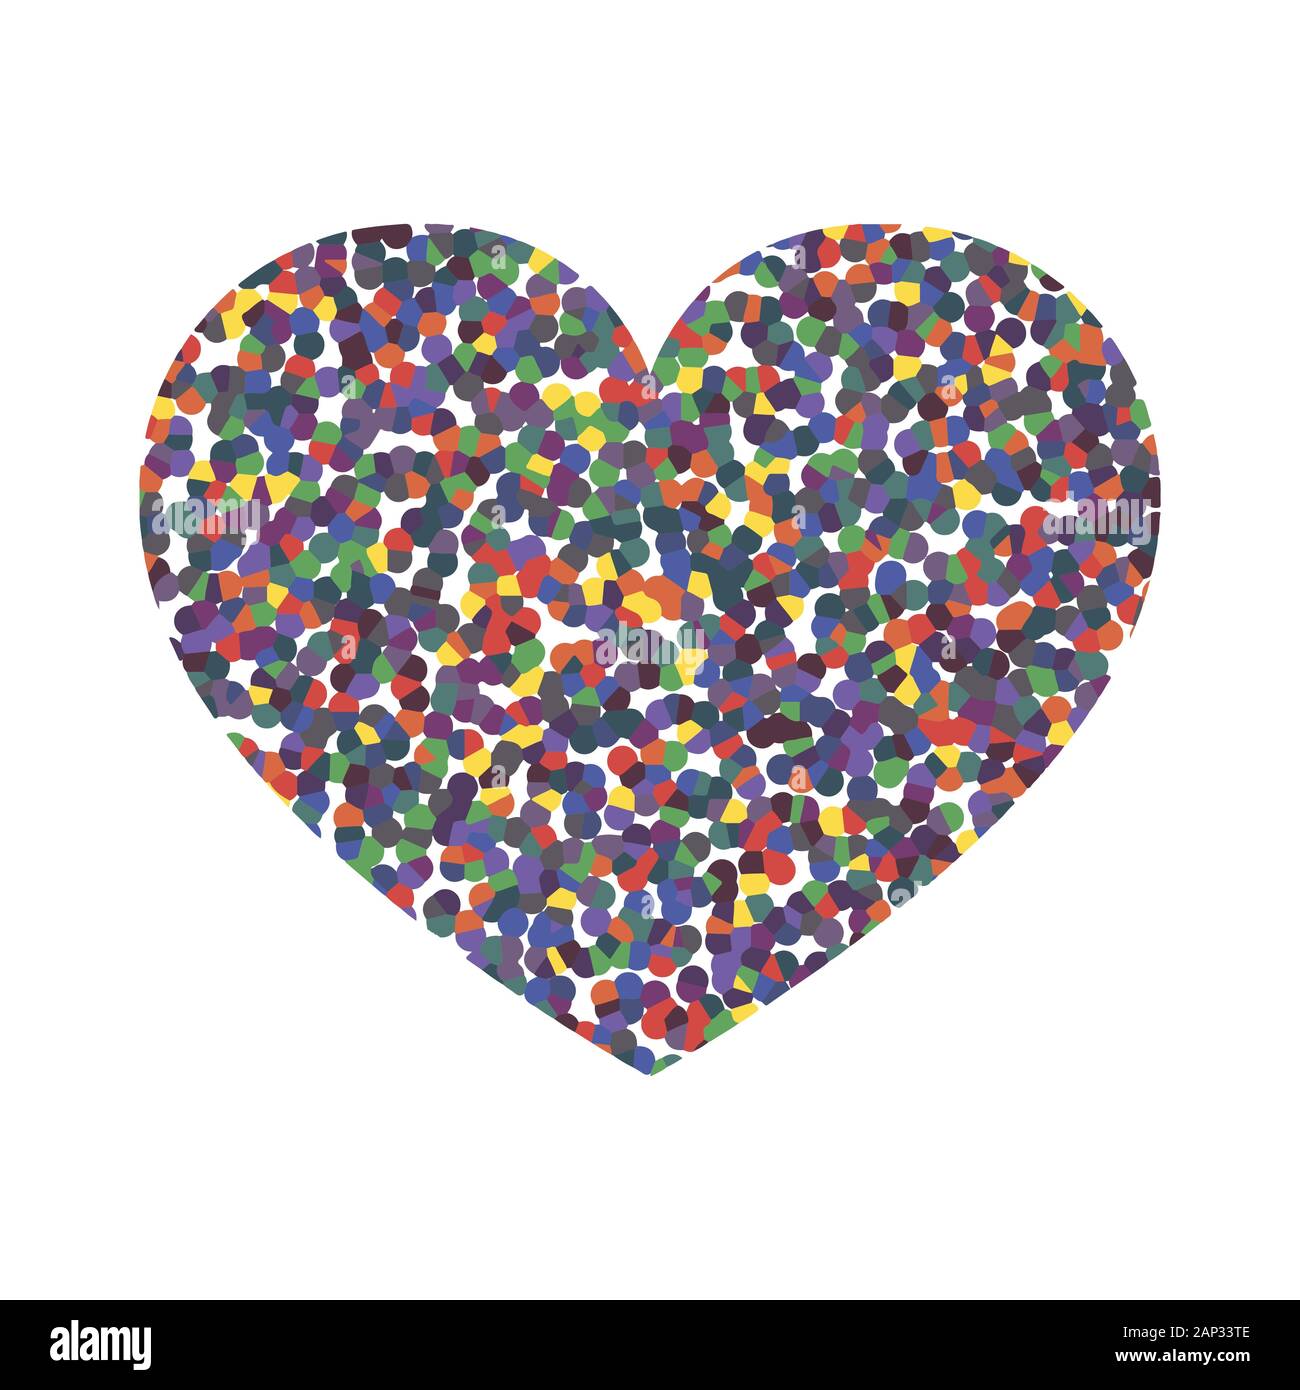 Farbige Herz Symbol. Abstraktes Herz auf weißem Hintergrund in flacher Ausführung. Vector Illustration. Herz als Symbol der Liebe. Stock Vektor